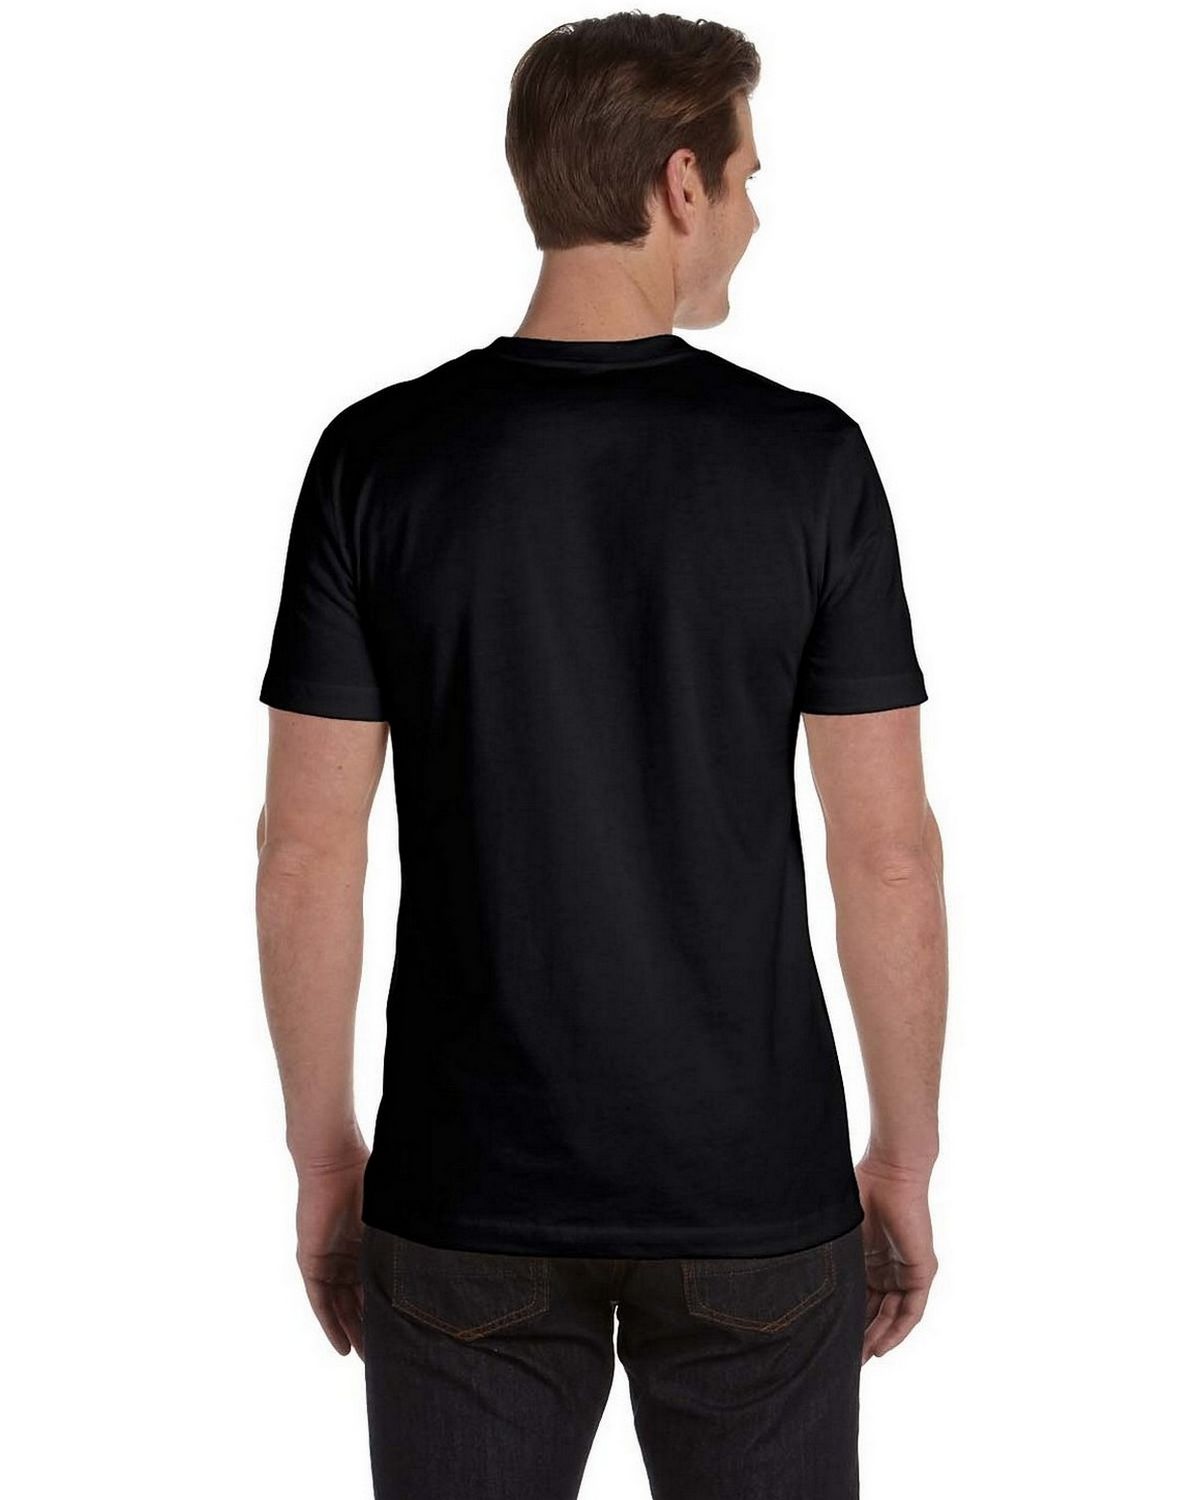 Bella + Canvas 3020 Men’s Organic Jersey Short-Sleeve T-Shirt ...